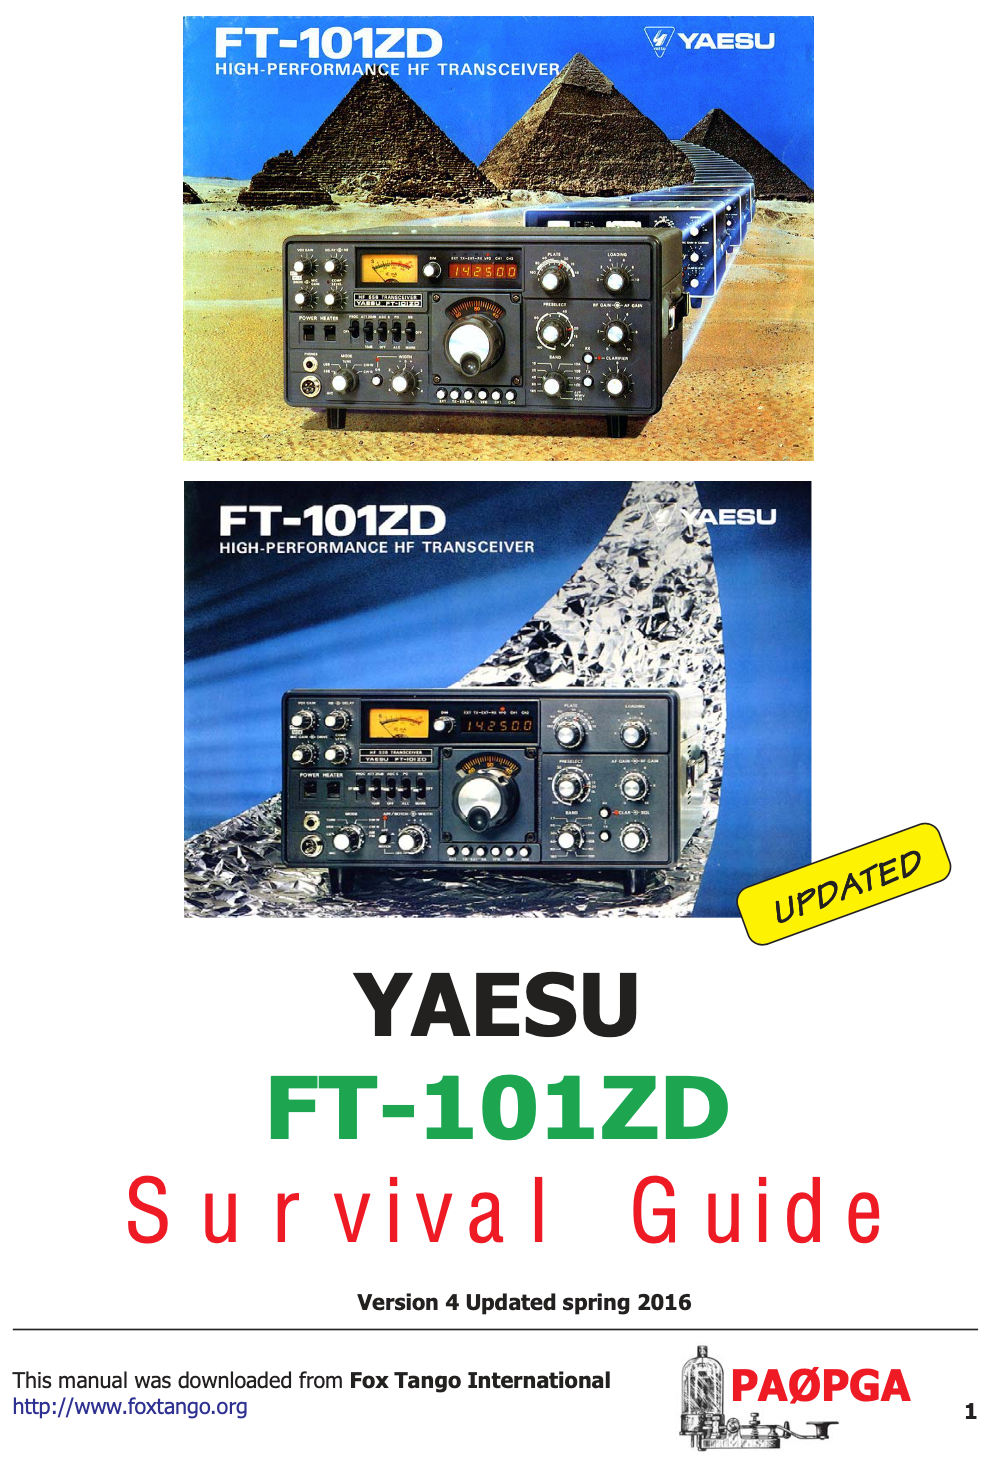 Yaesu FT-101ZD - Survival Guide (By PA0PGA)